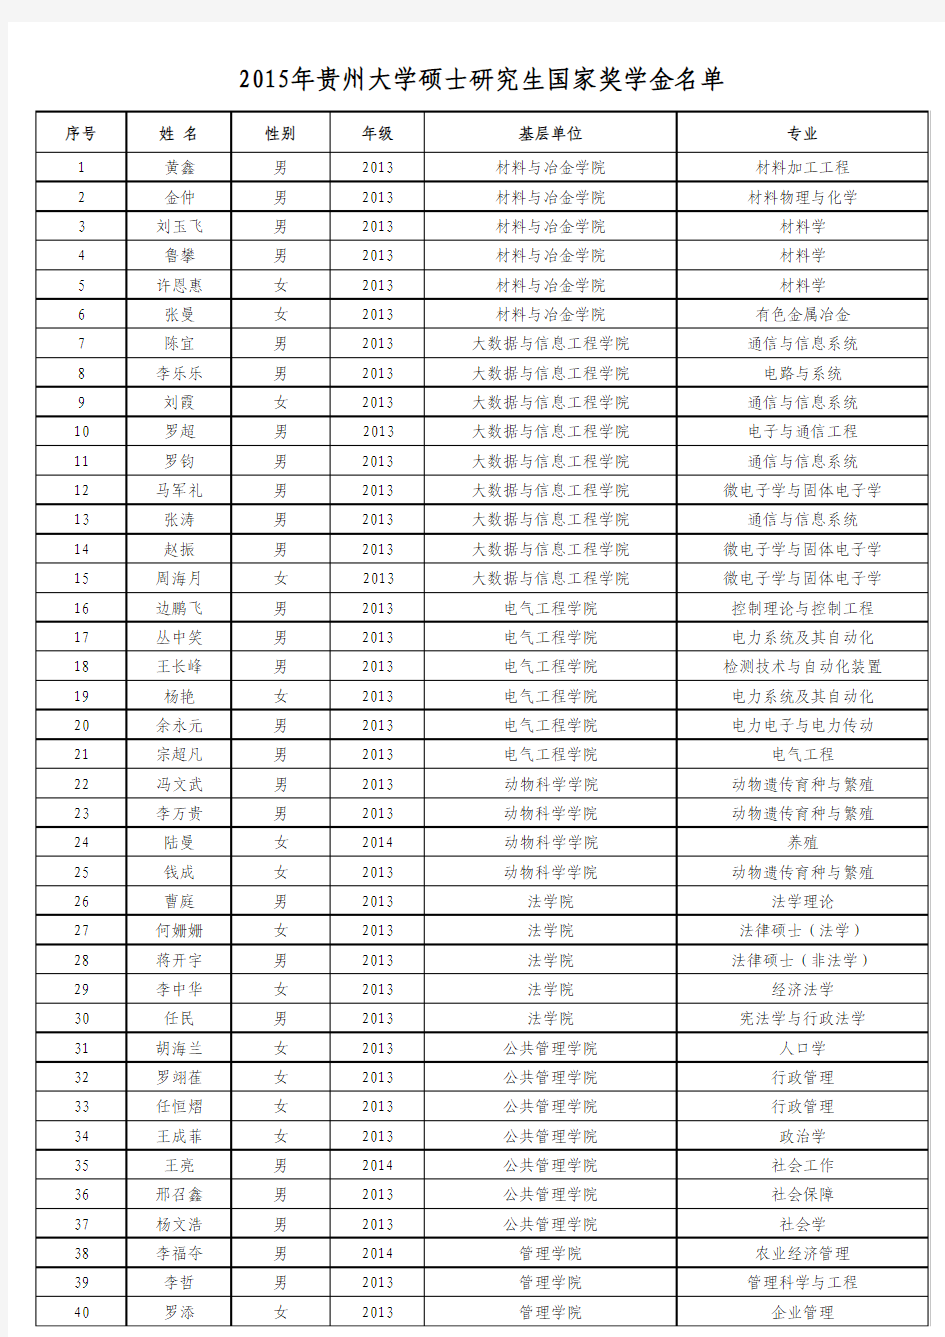 2015年贵州大学硕士研究生国家奖学金名单